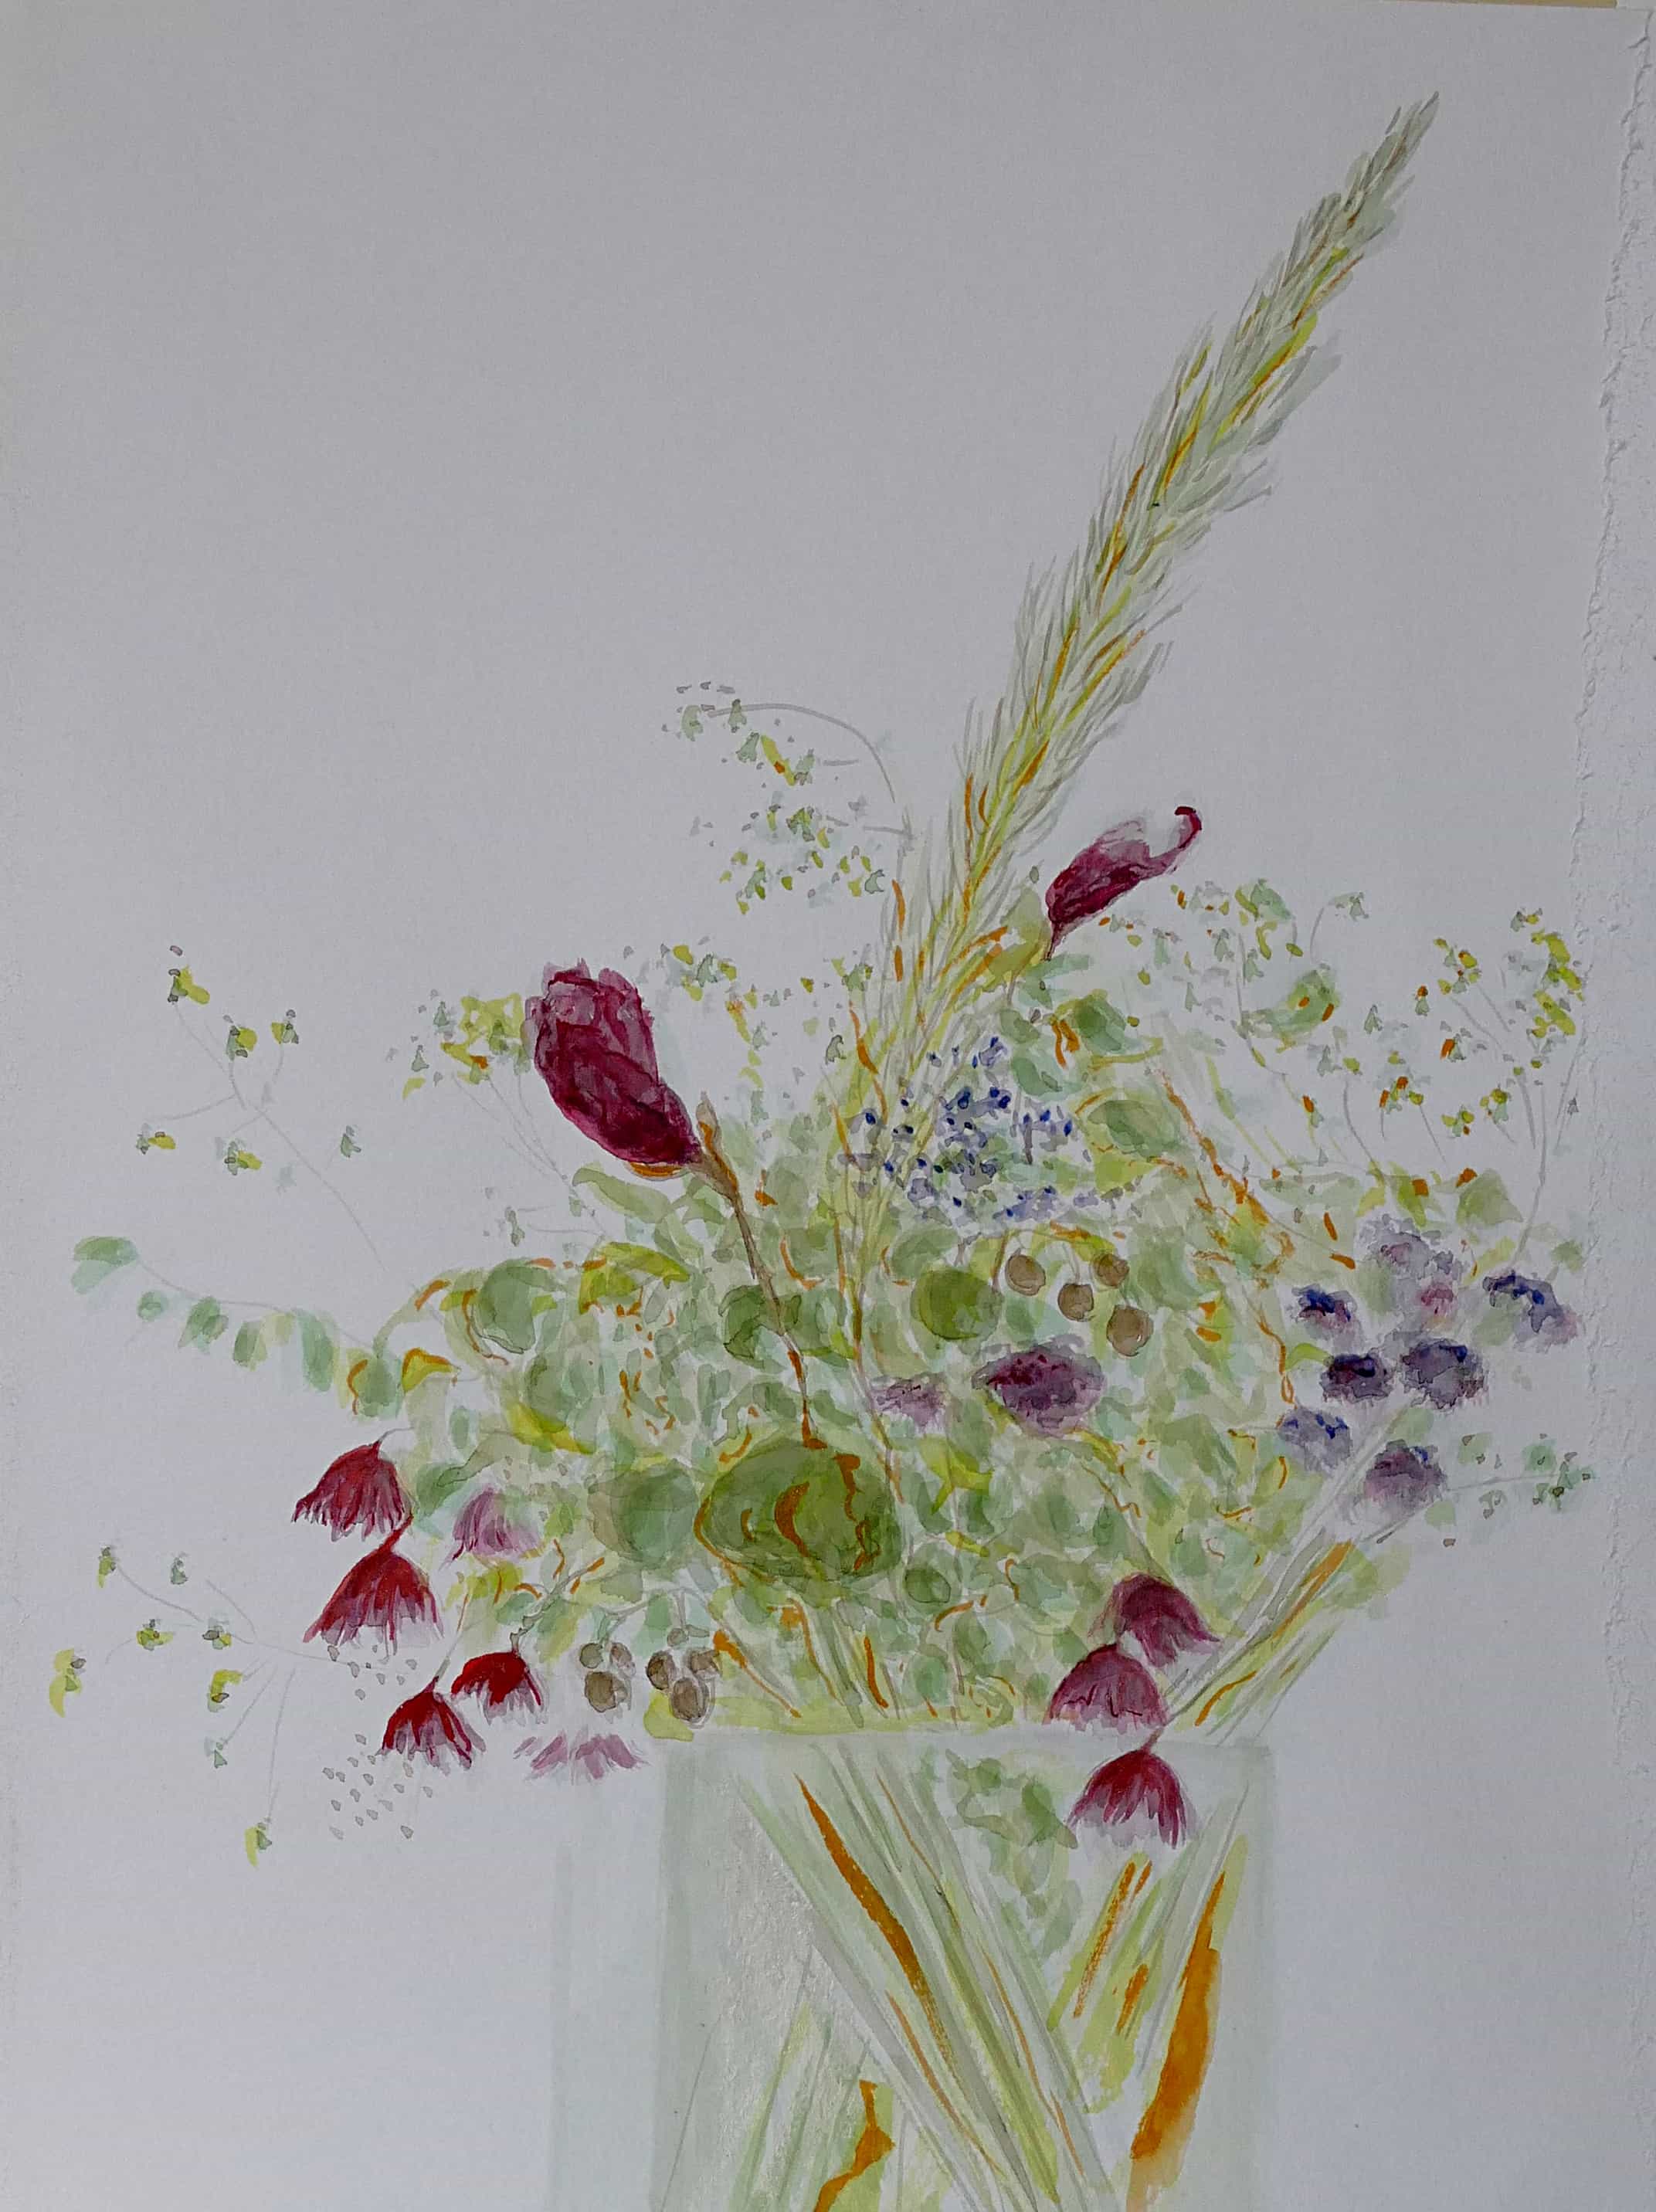 17 Sommerblumenstrauss Aquarellfarbe auf Papier 25x40